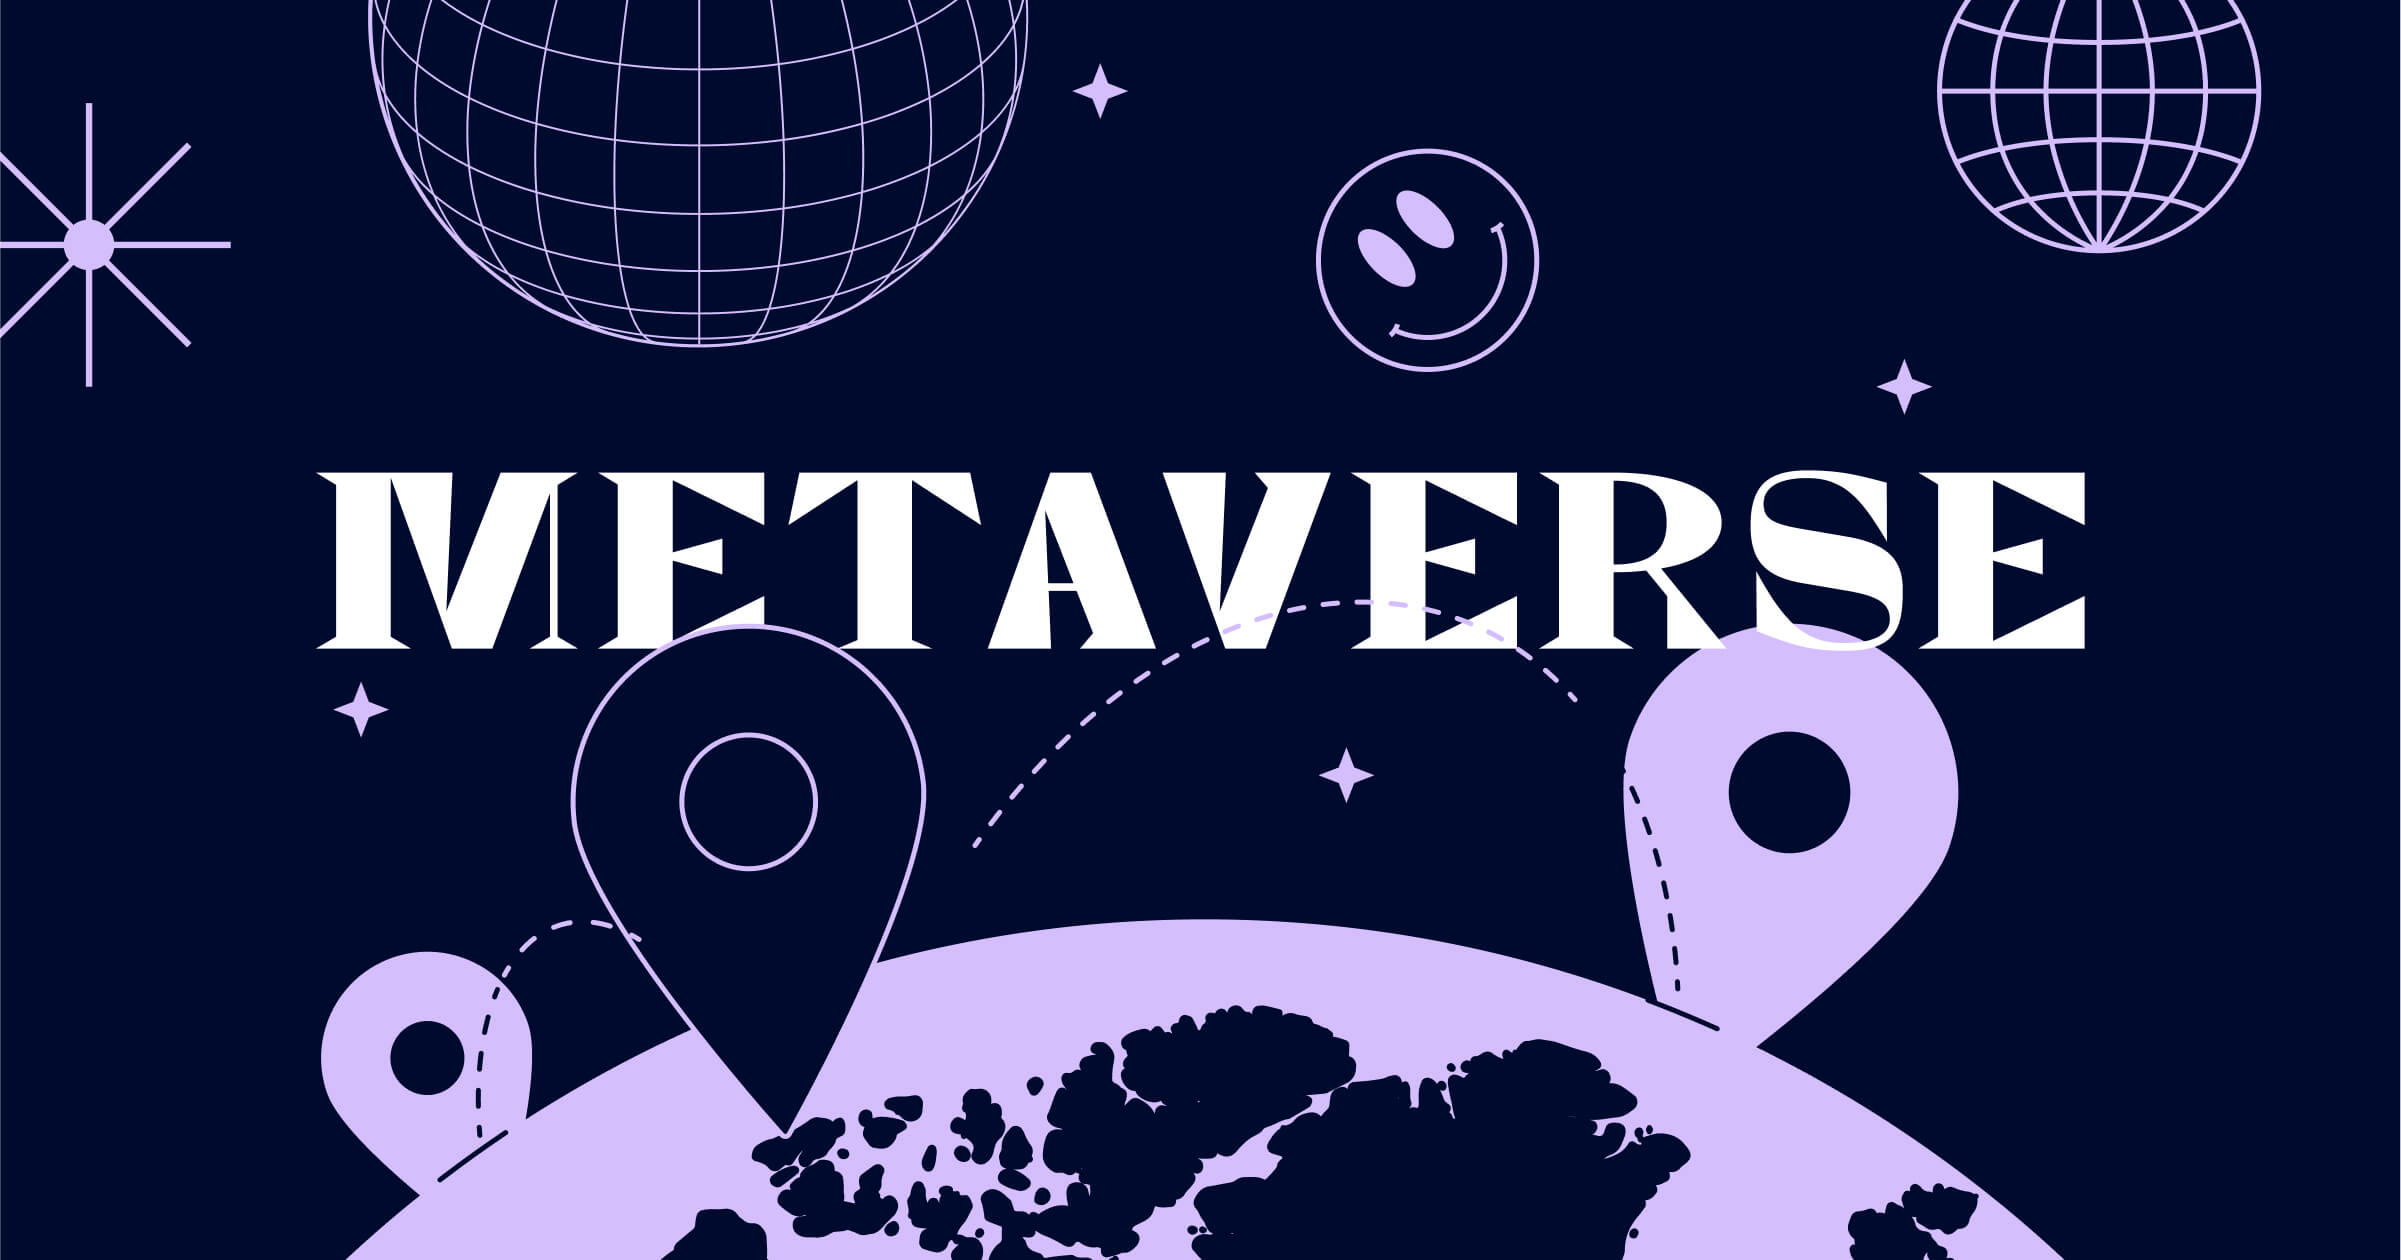 图片展示了深色背景上的“METAVERSE”文字，周围有星球、位置标记和虚拟地球网格，传达了数字世界和虚拟空间的概念。